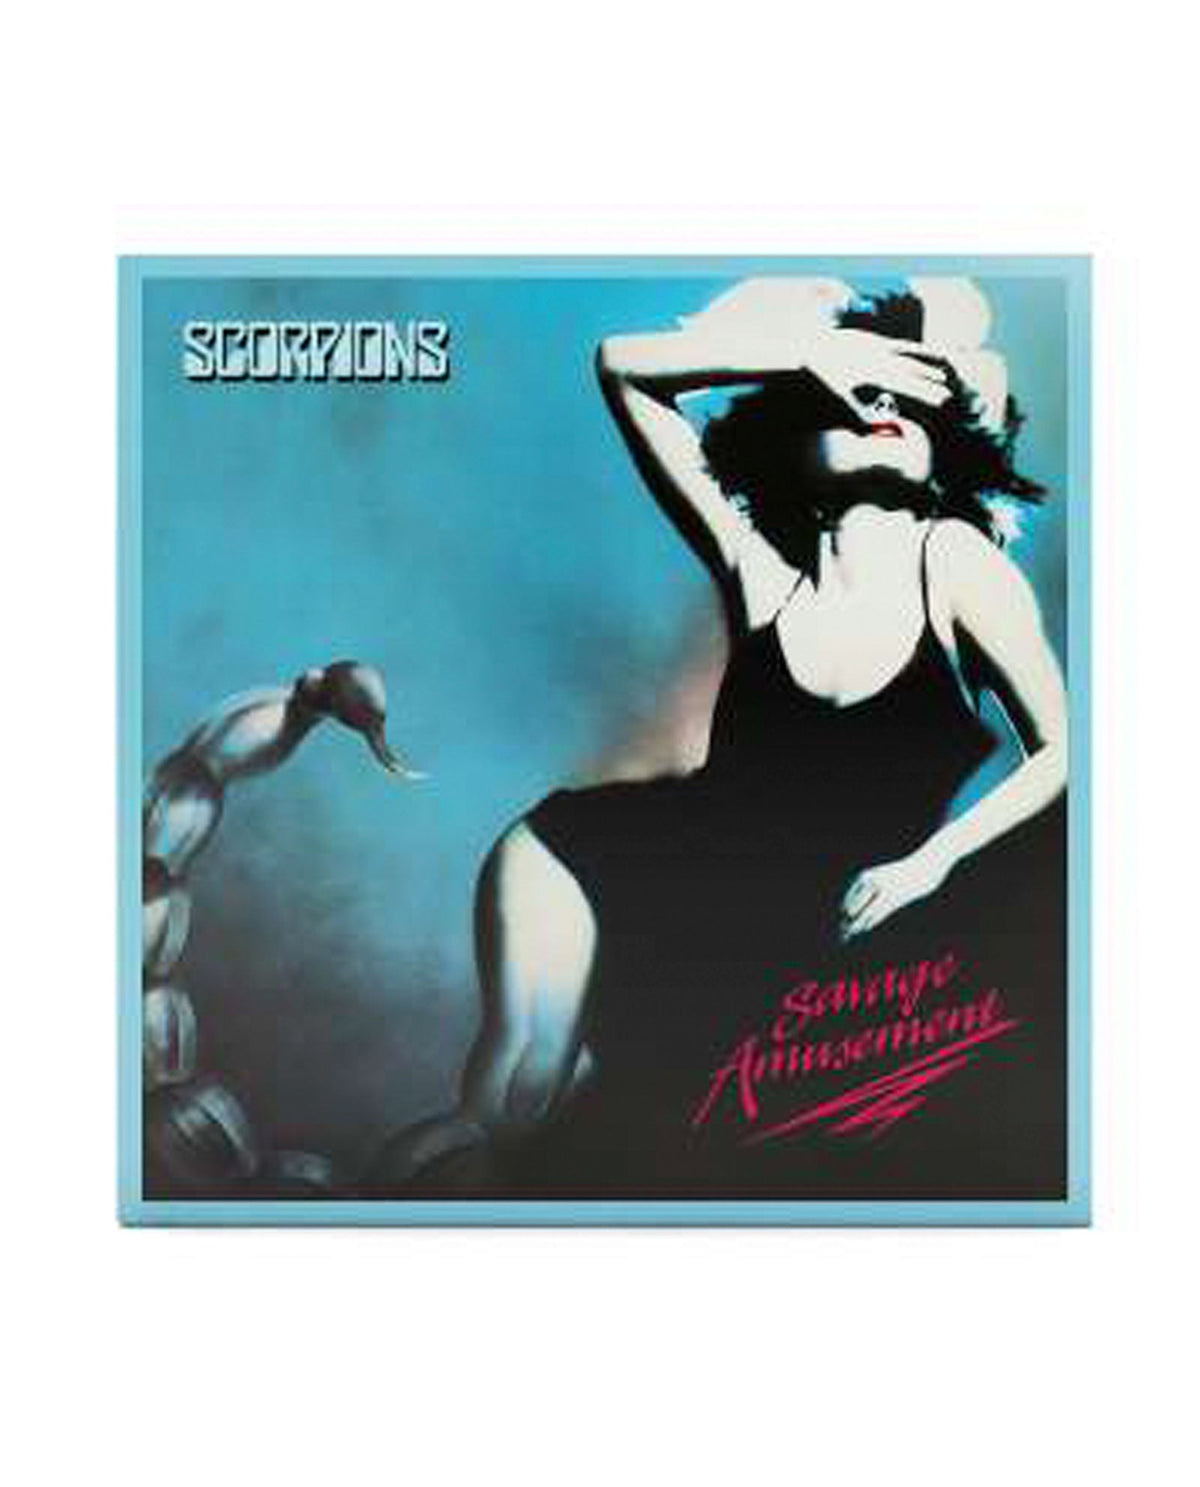 Scorpions - LP Vinilo "Savage Amusement" - D2fy · Rocktud - Rocktud